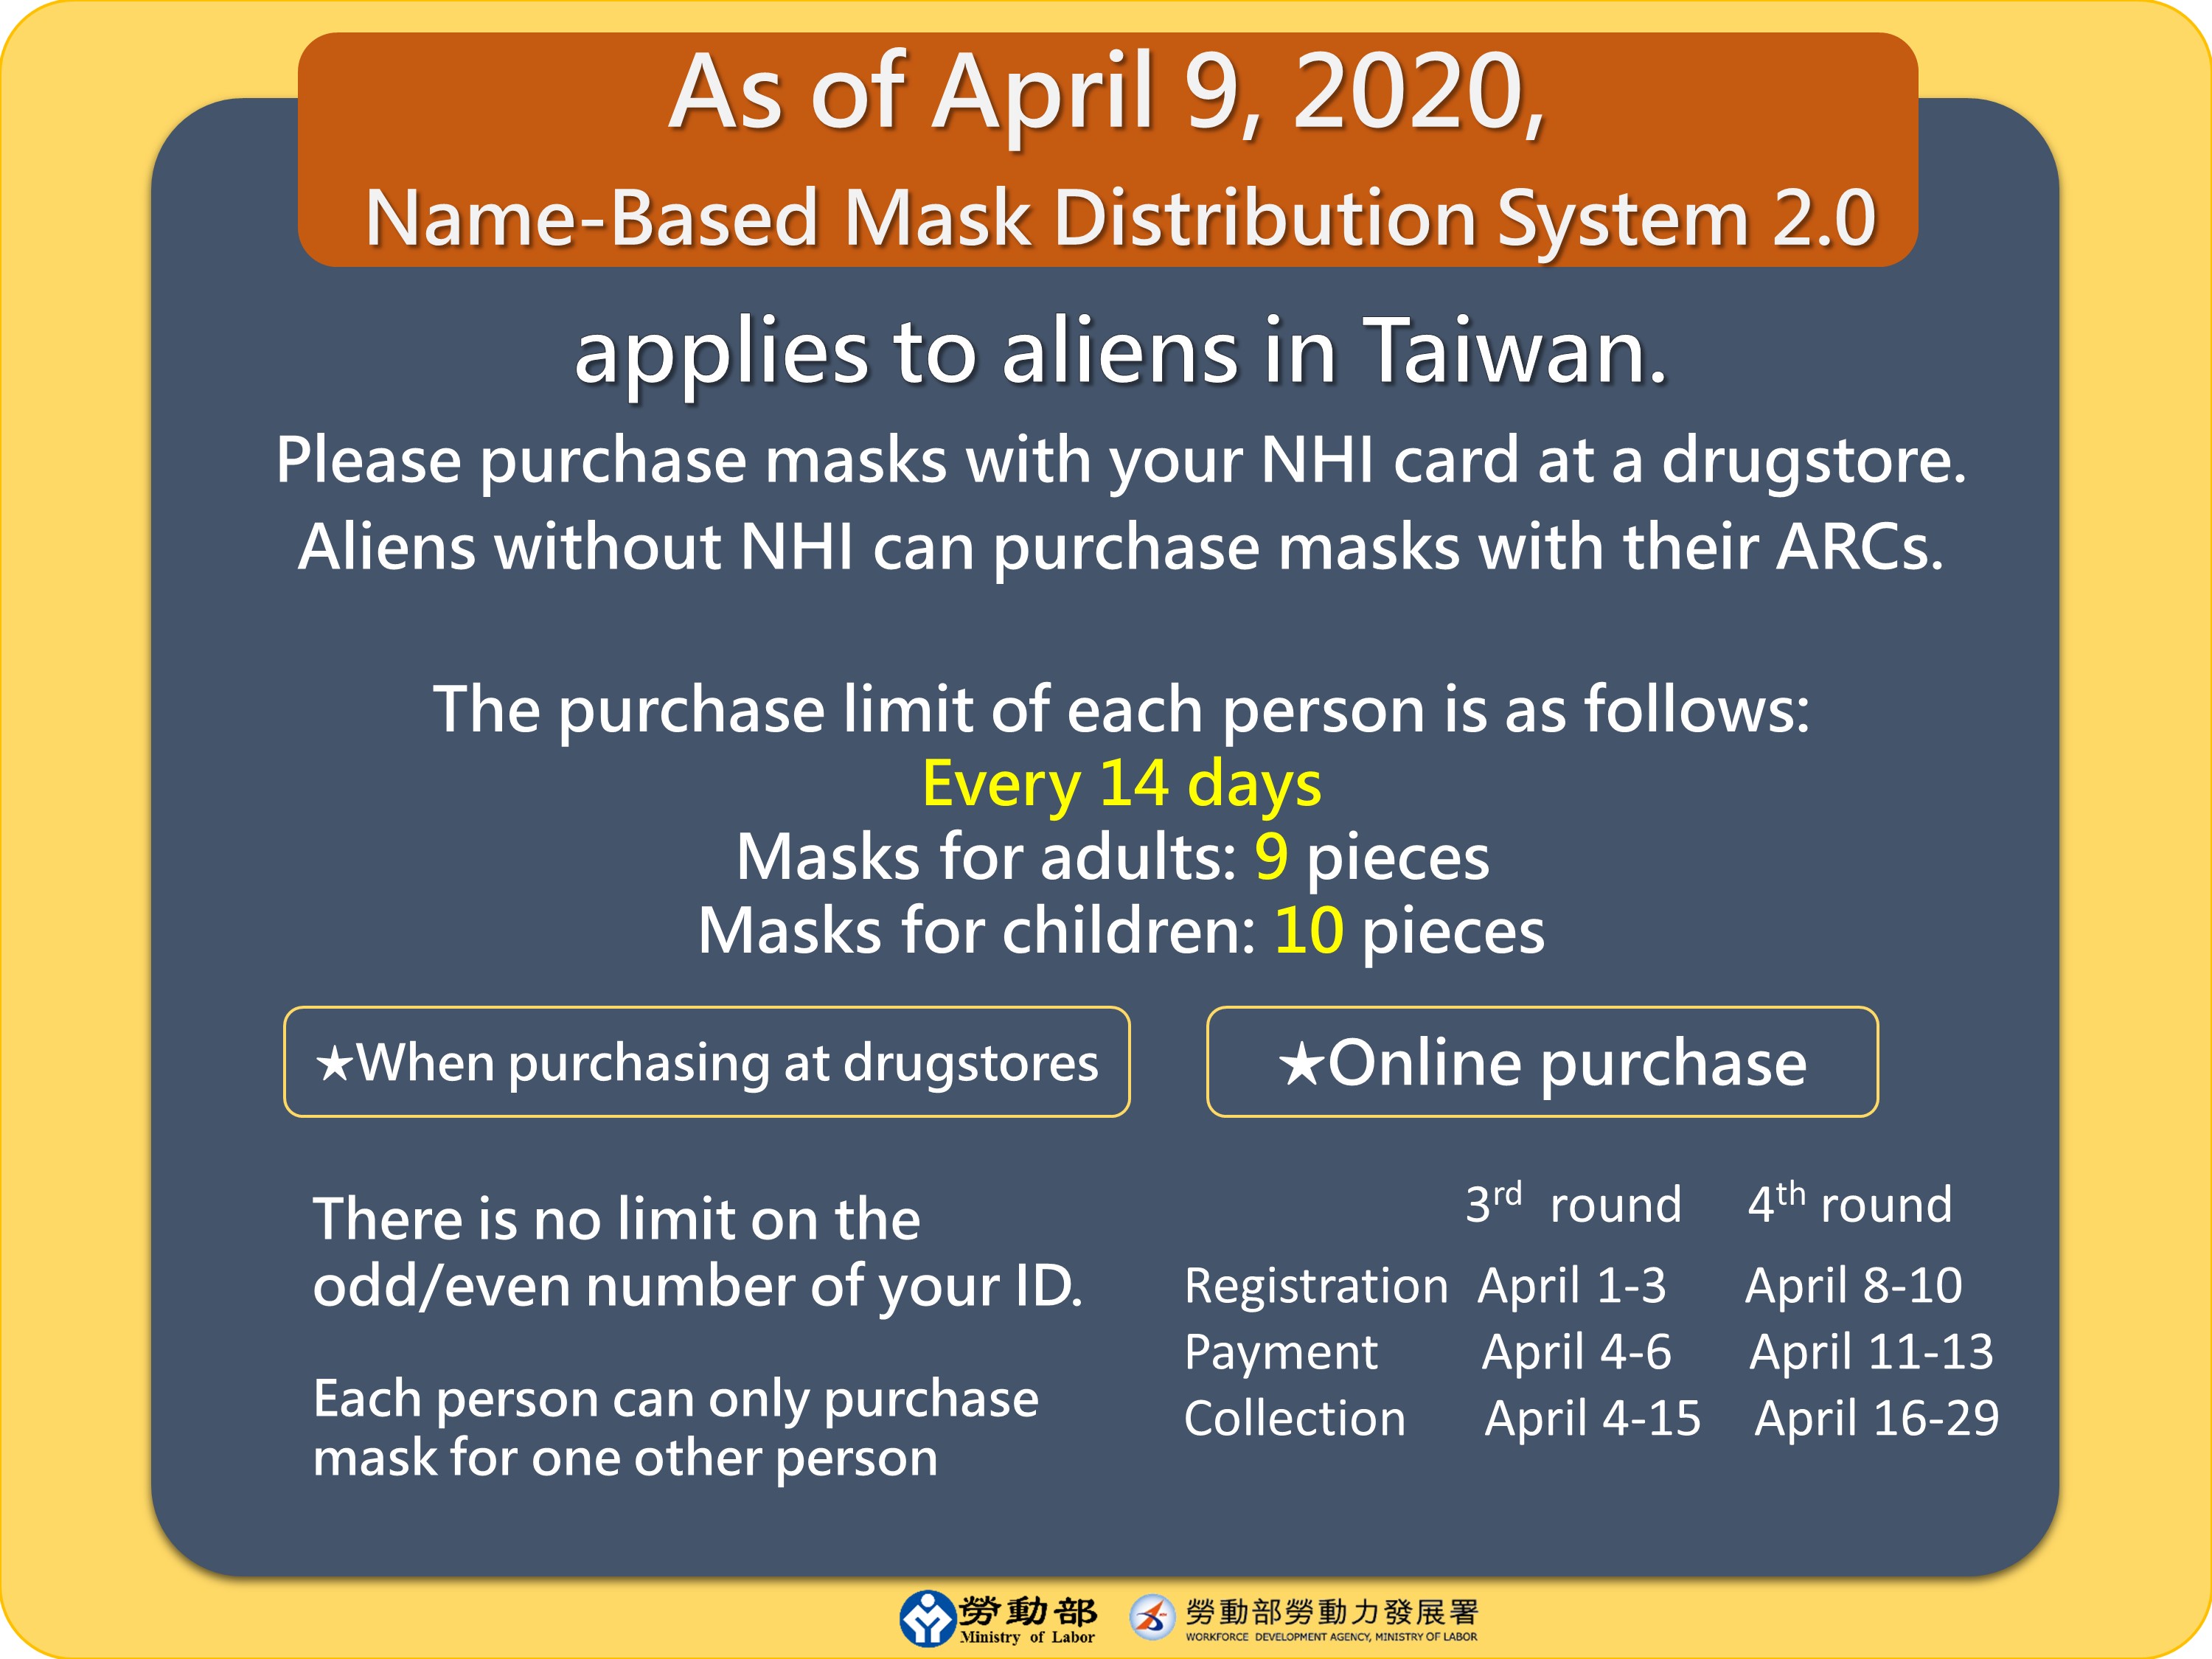 口罩實名制2.0 -4月9日起-As of April 9, 2020, Name-Based Mask Distribution System 2.0-英文.JPG